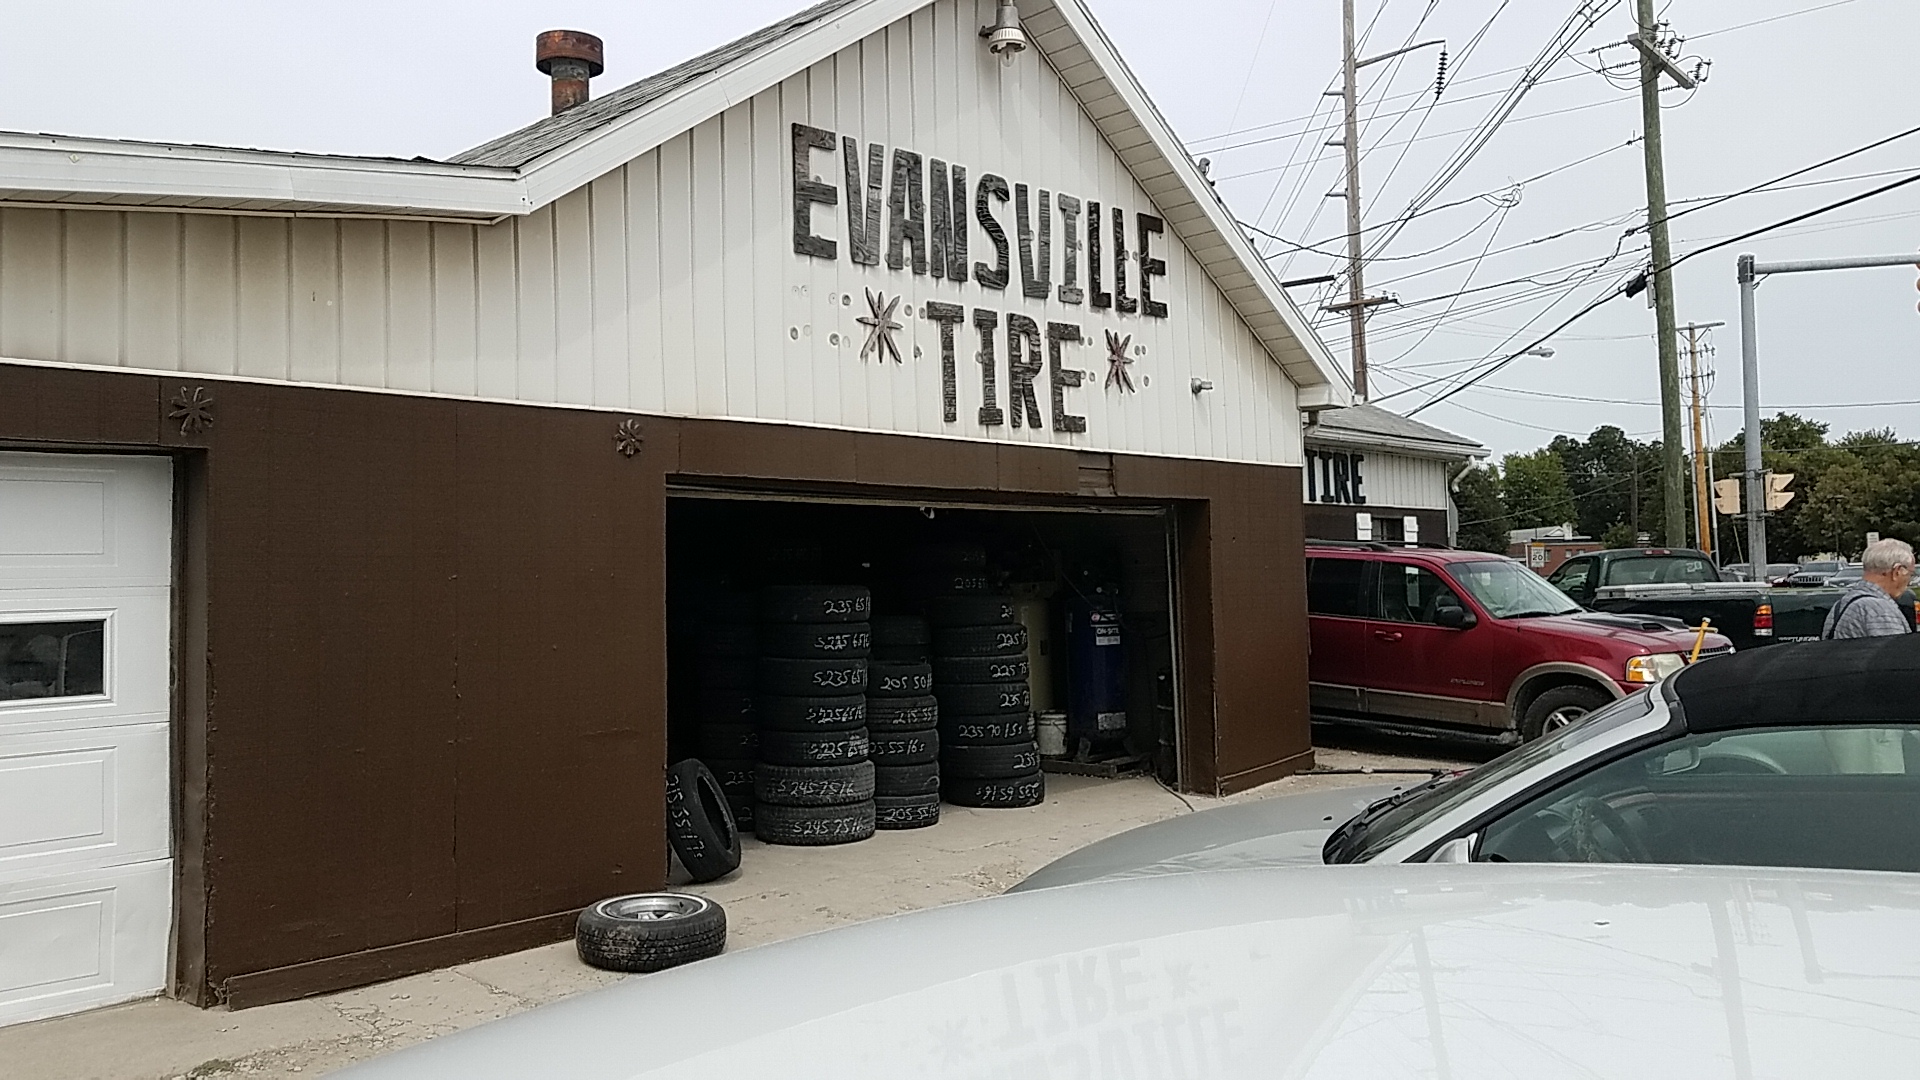 Evansville Tire